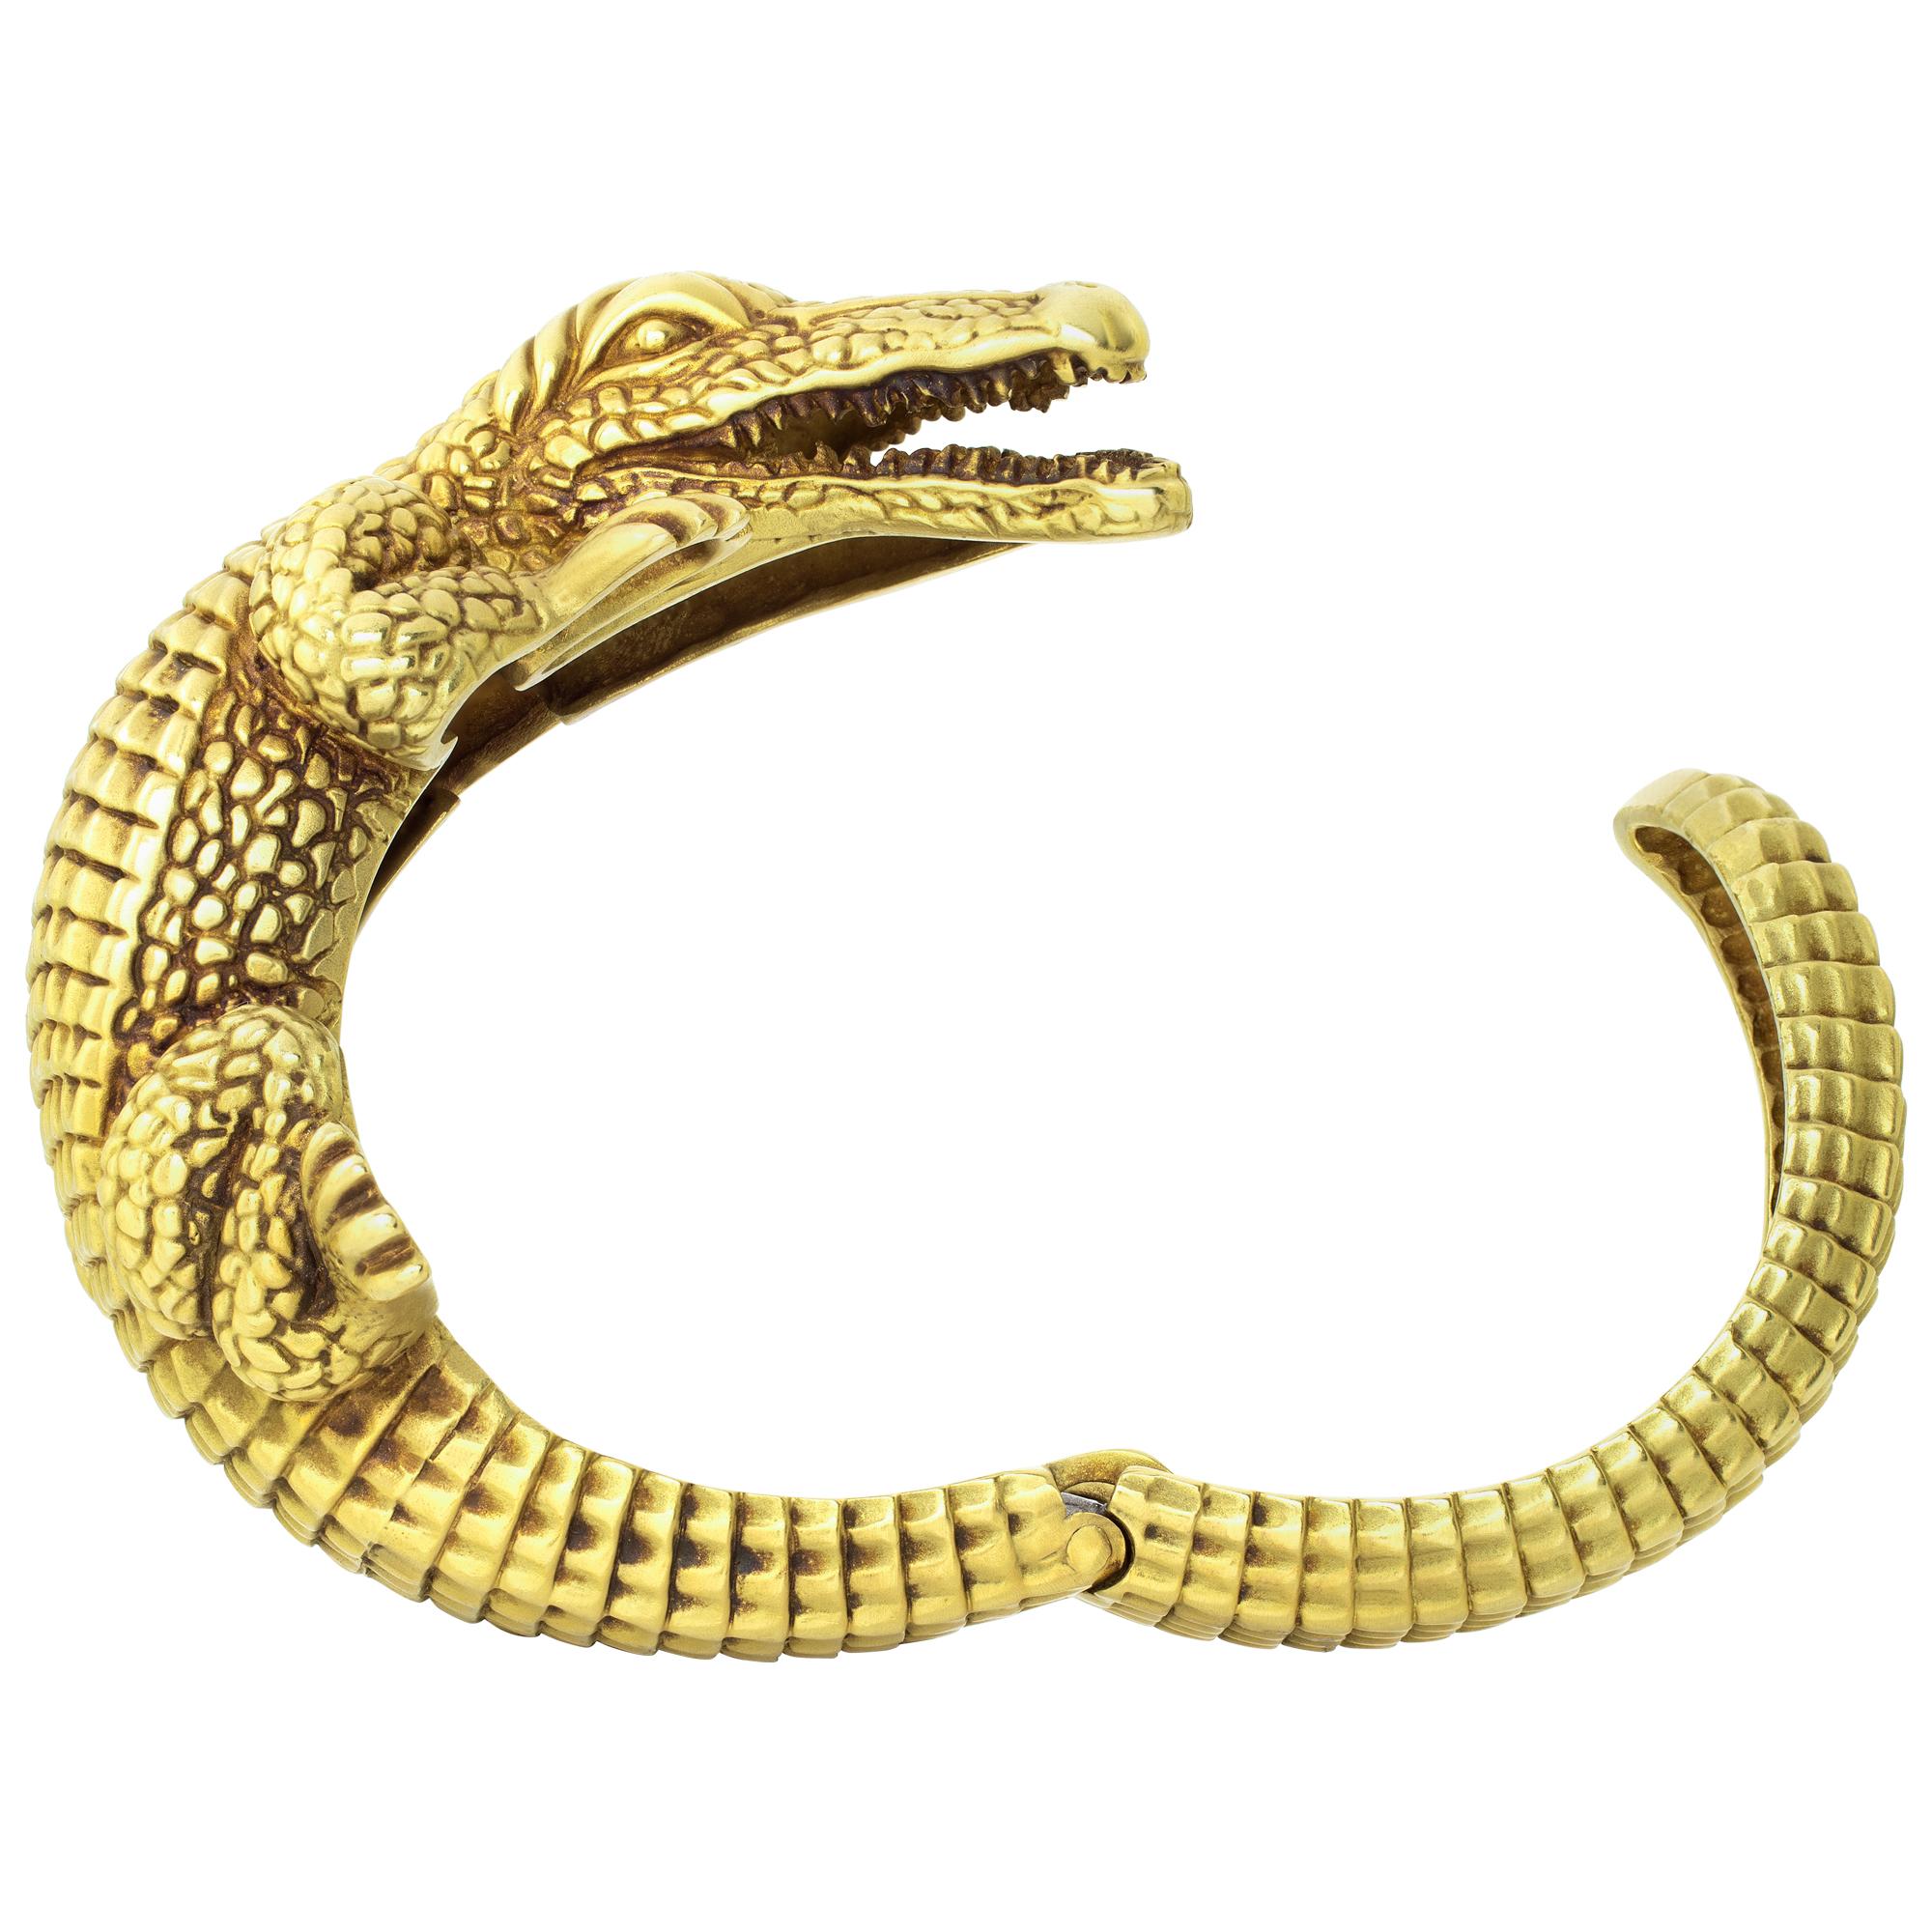 Prix de détail 38 000 $ Barry KIESELSTEIN Bracelet manchette en alligator en or jaune 18 carats. L'alligator emblématique de KIESELSTEIN-CORD est un look indémodable. Ce bracelet manchette d'une férocité inouïe est réalisé en or jaune mat sous la